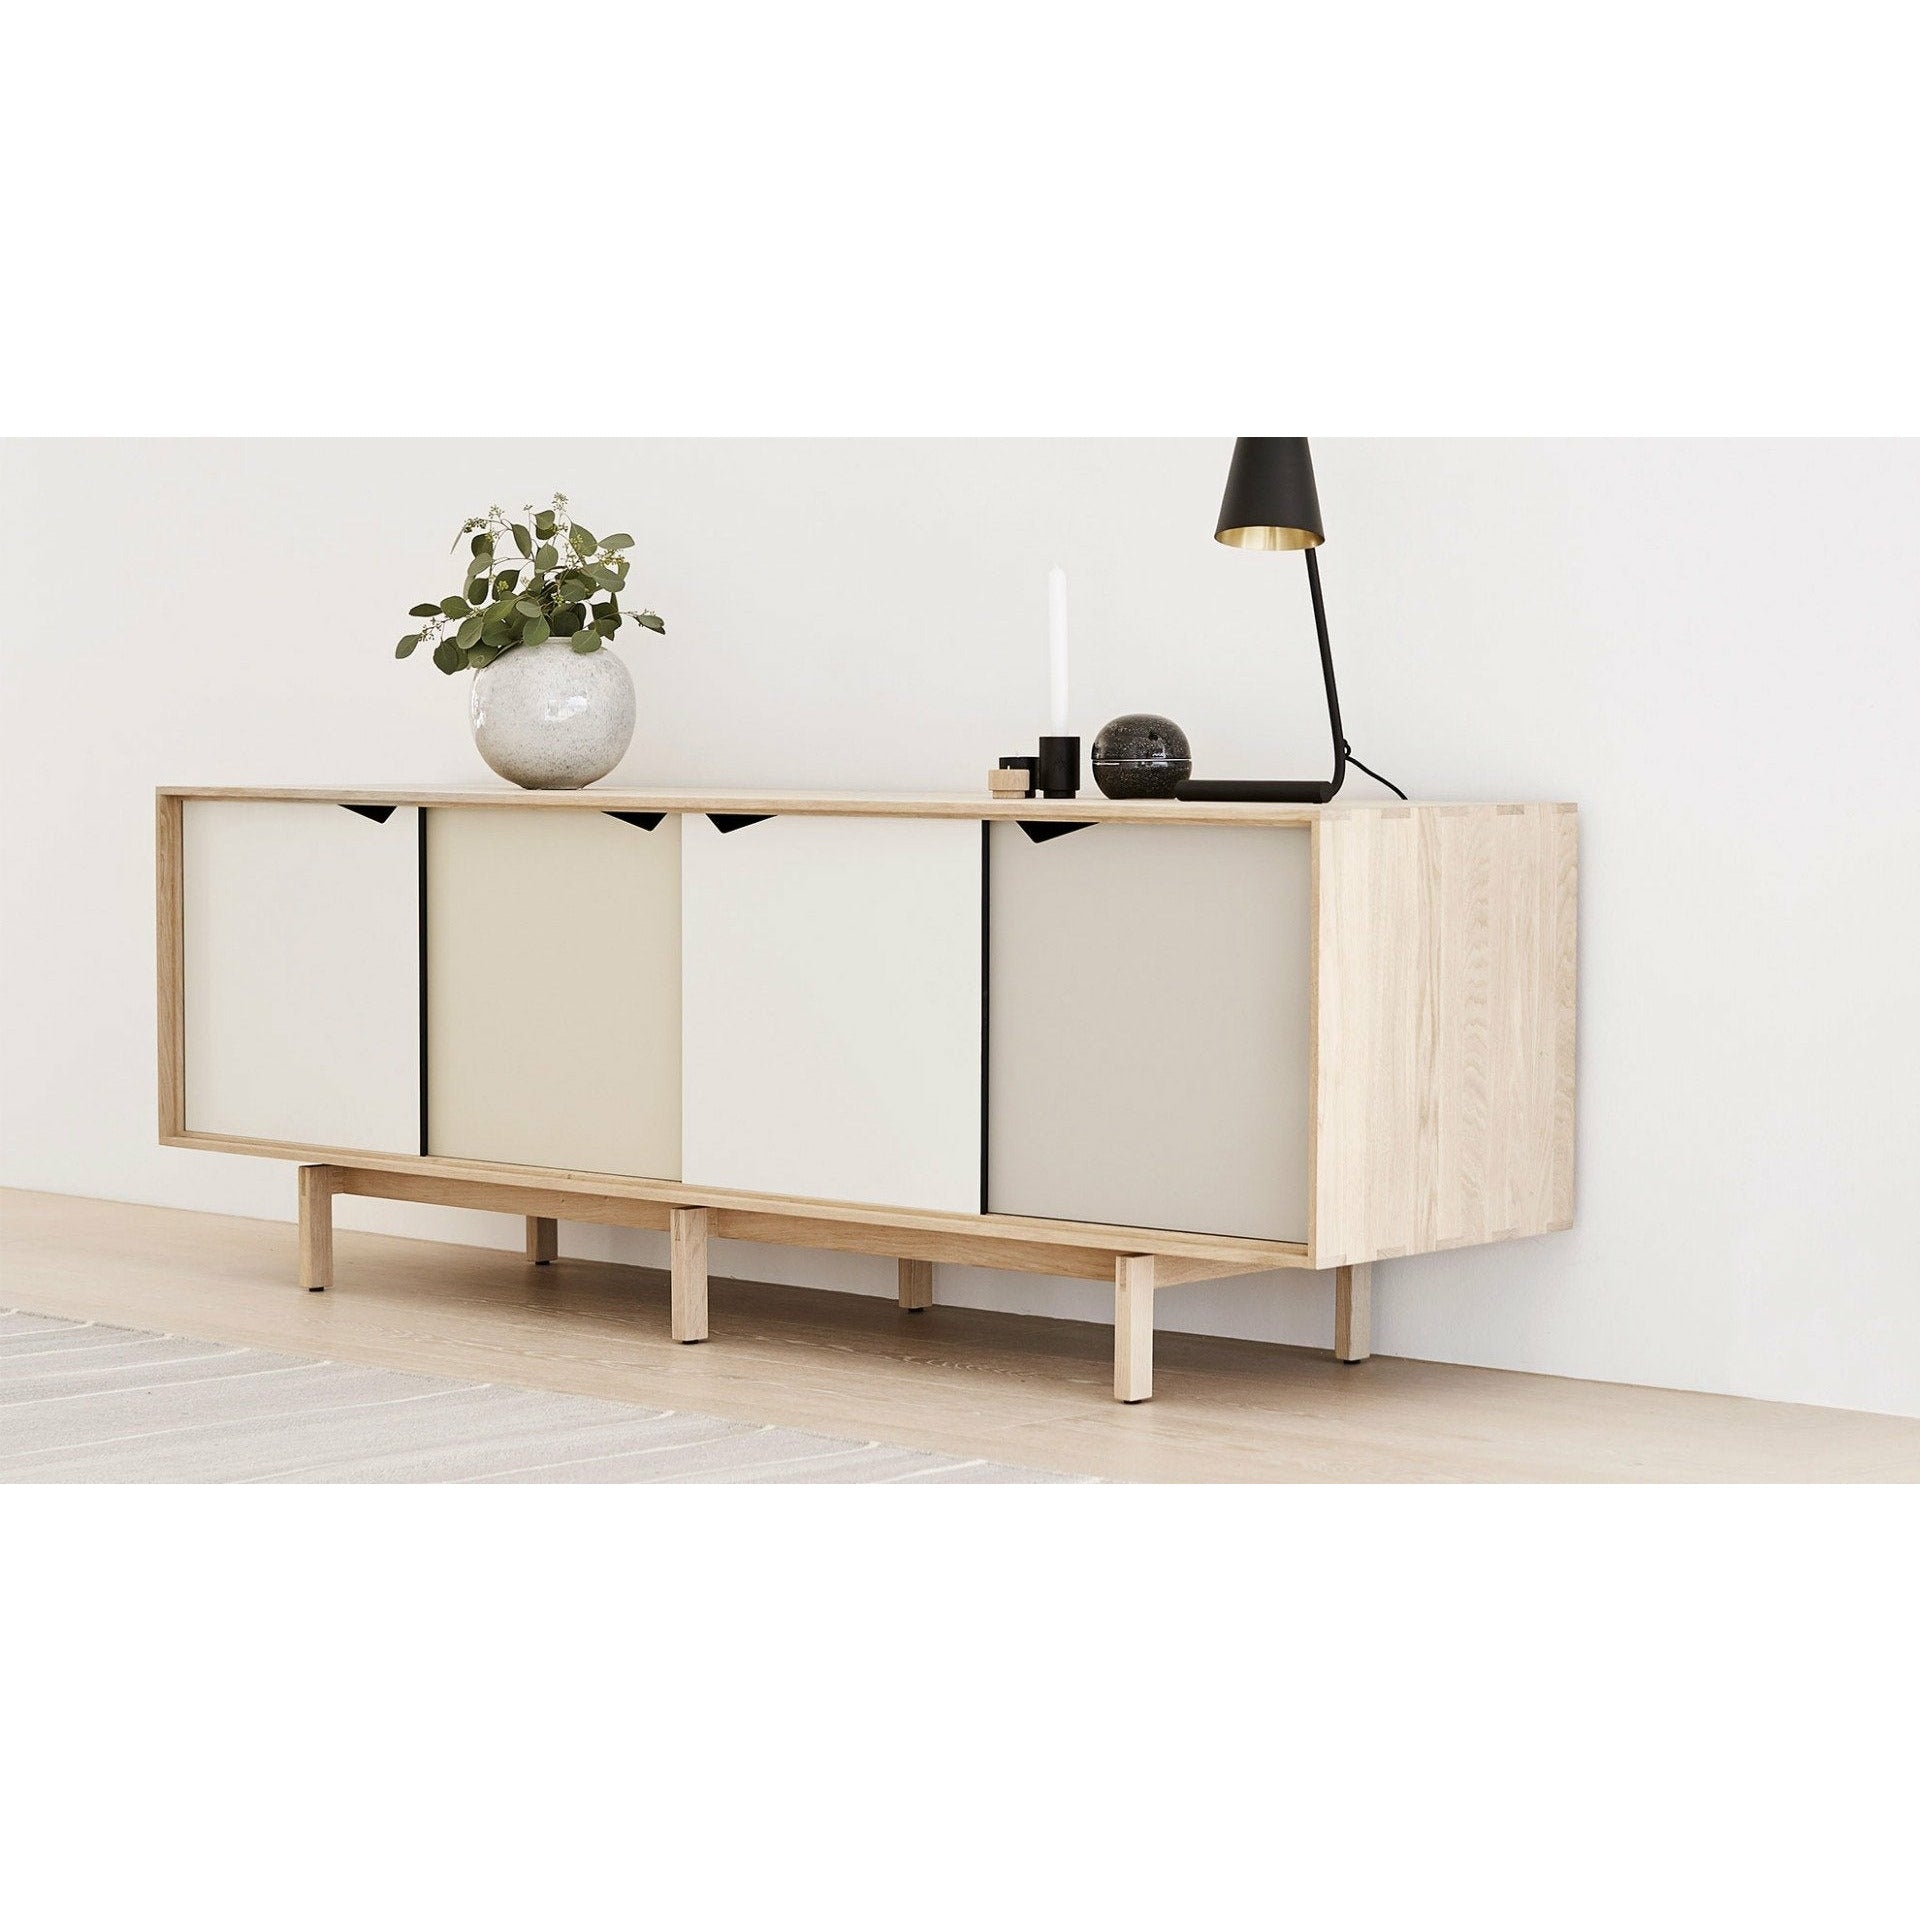 Andersen Furniture S1 Sideboard tvålad ek, vita lådor, 200 cm